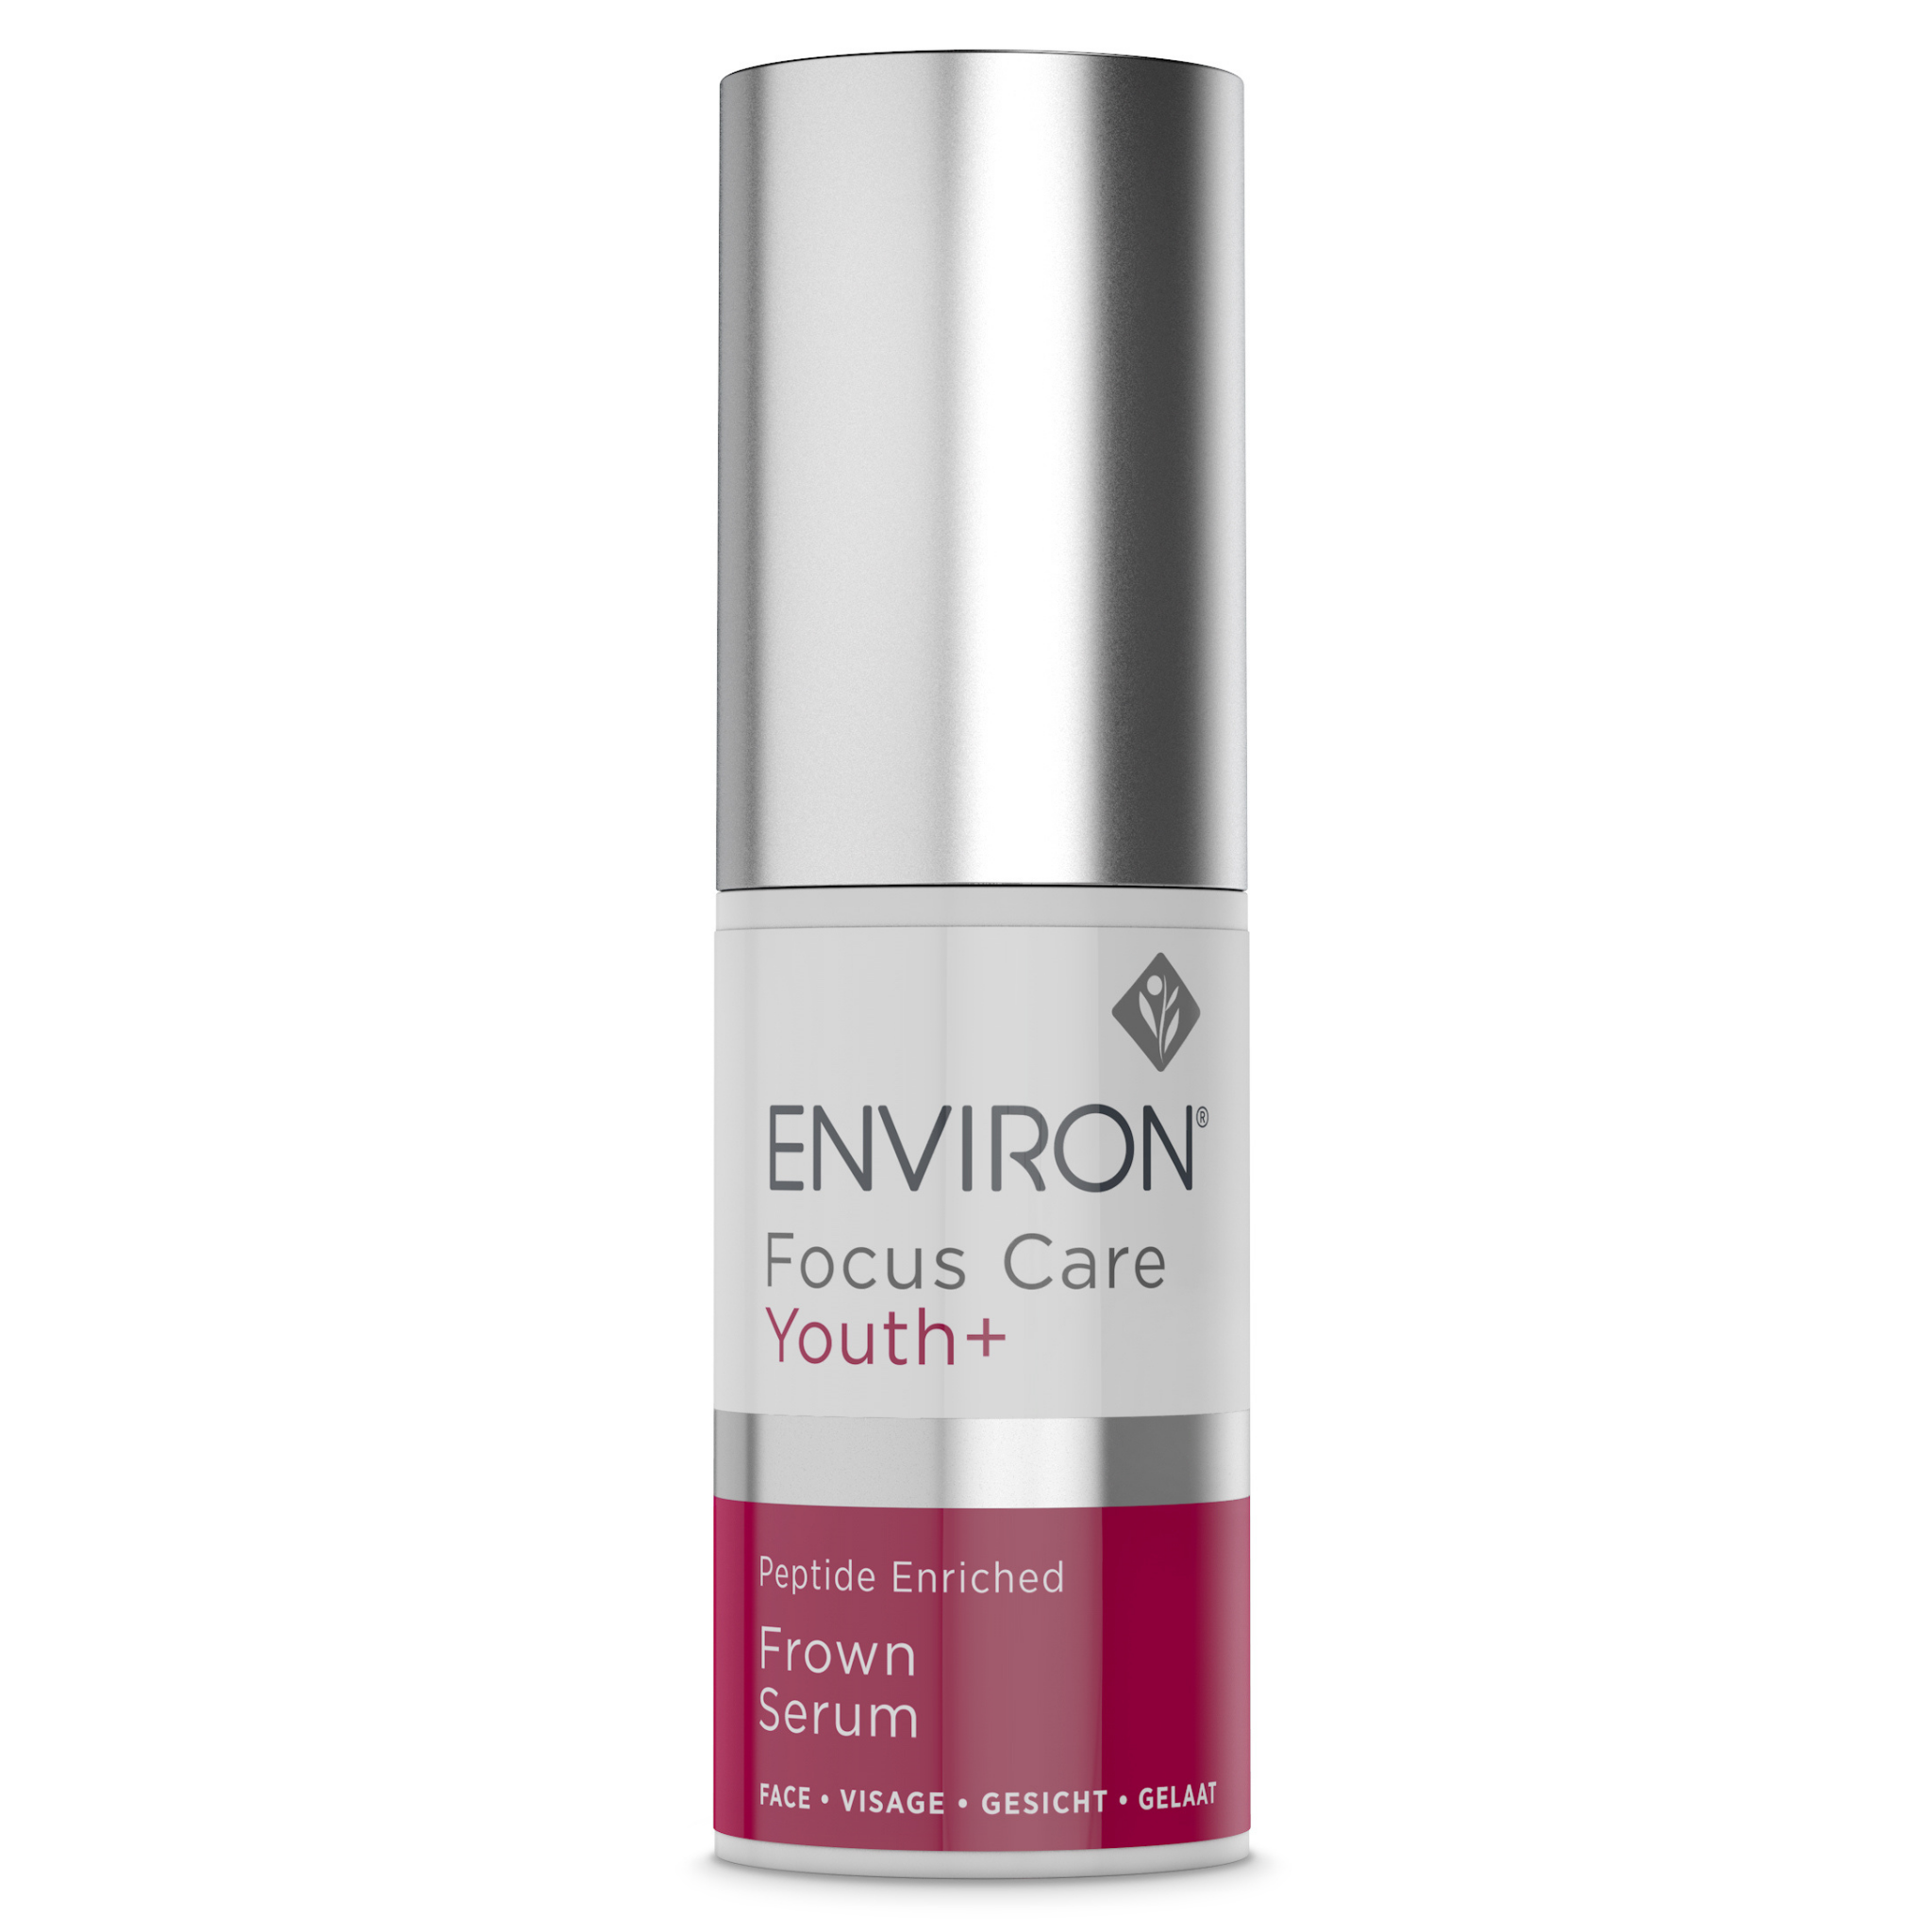 Environ - Peptide Enriched Frown Serum (20 ml) - Sarah Akram Skincare